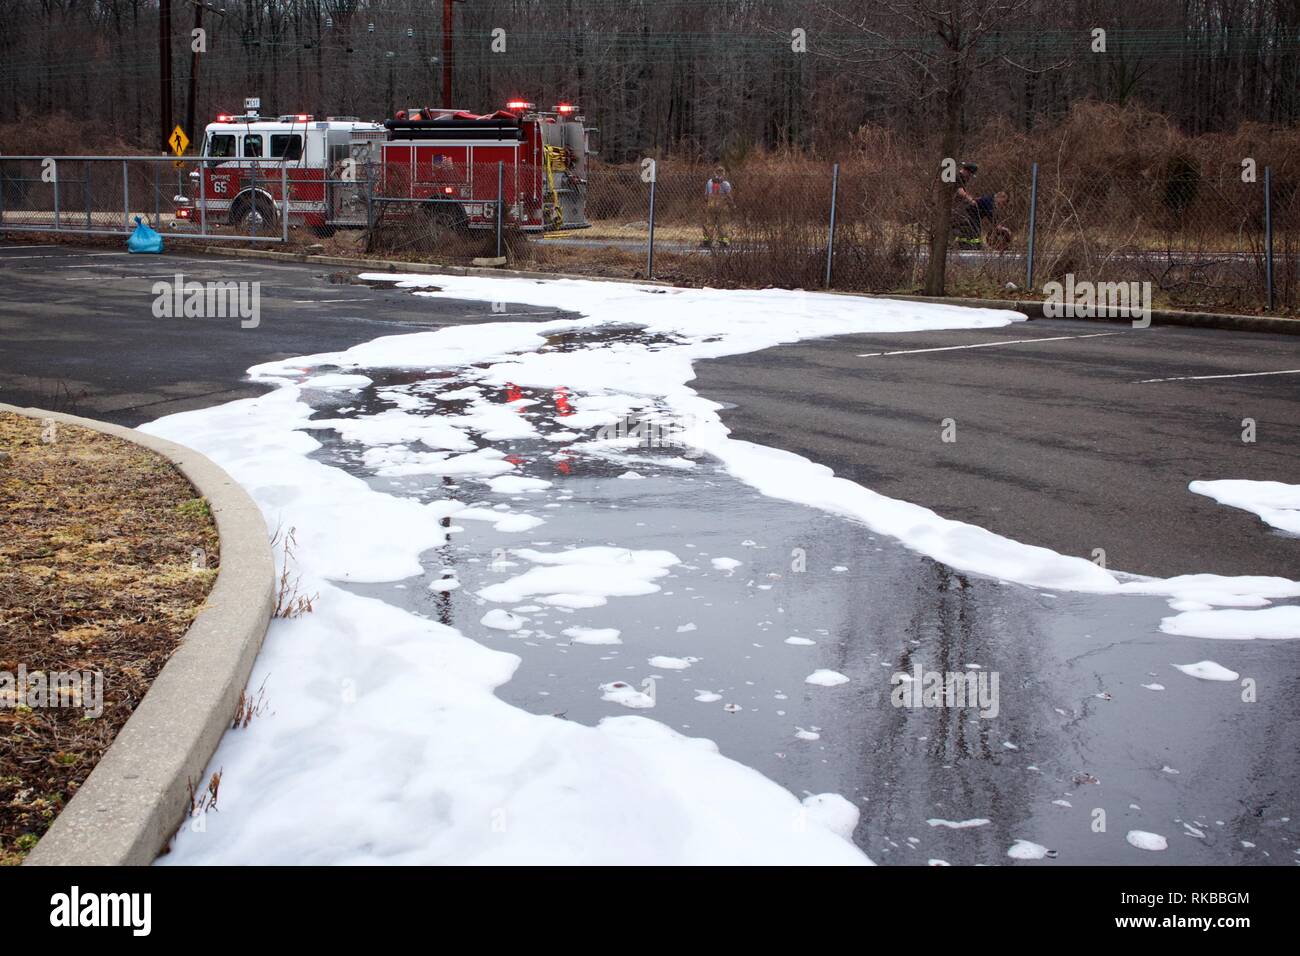 Bensalem, Pennsylvania, Stati Uniti d'America - Febbraio 7, 2019; schiuma antincendio rimane sulla superficie del terreno a seguito di una autocisterna incidente. Foto Stock